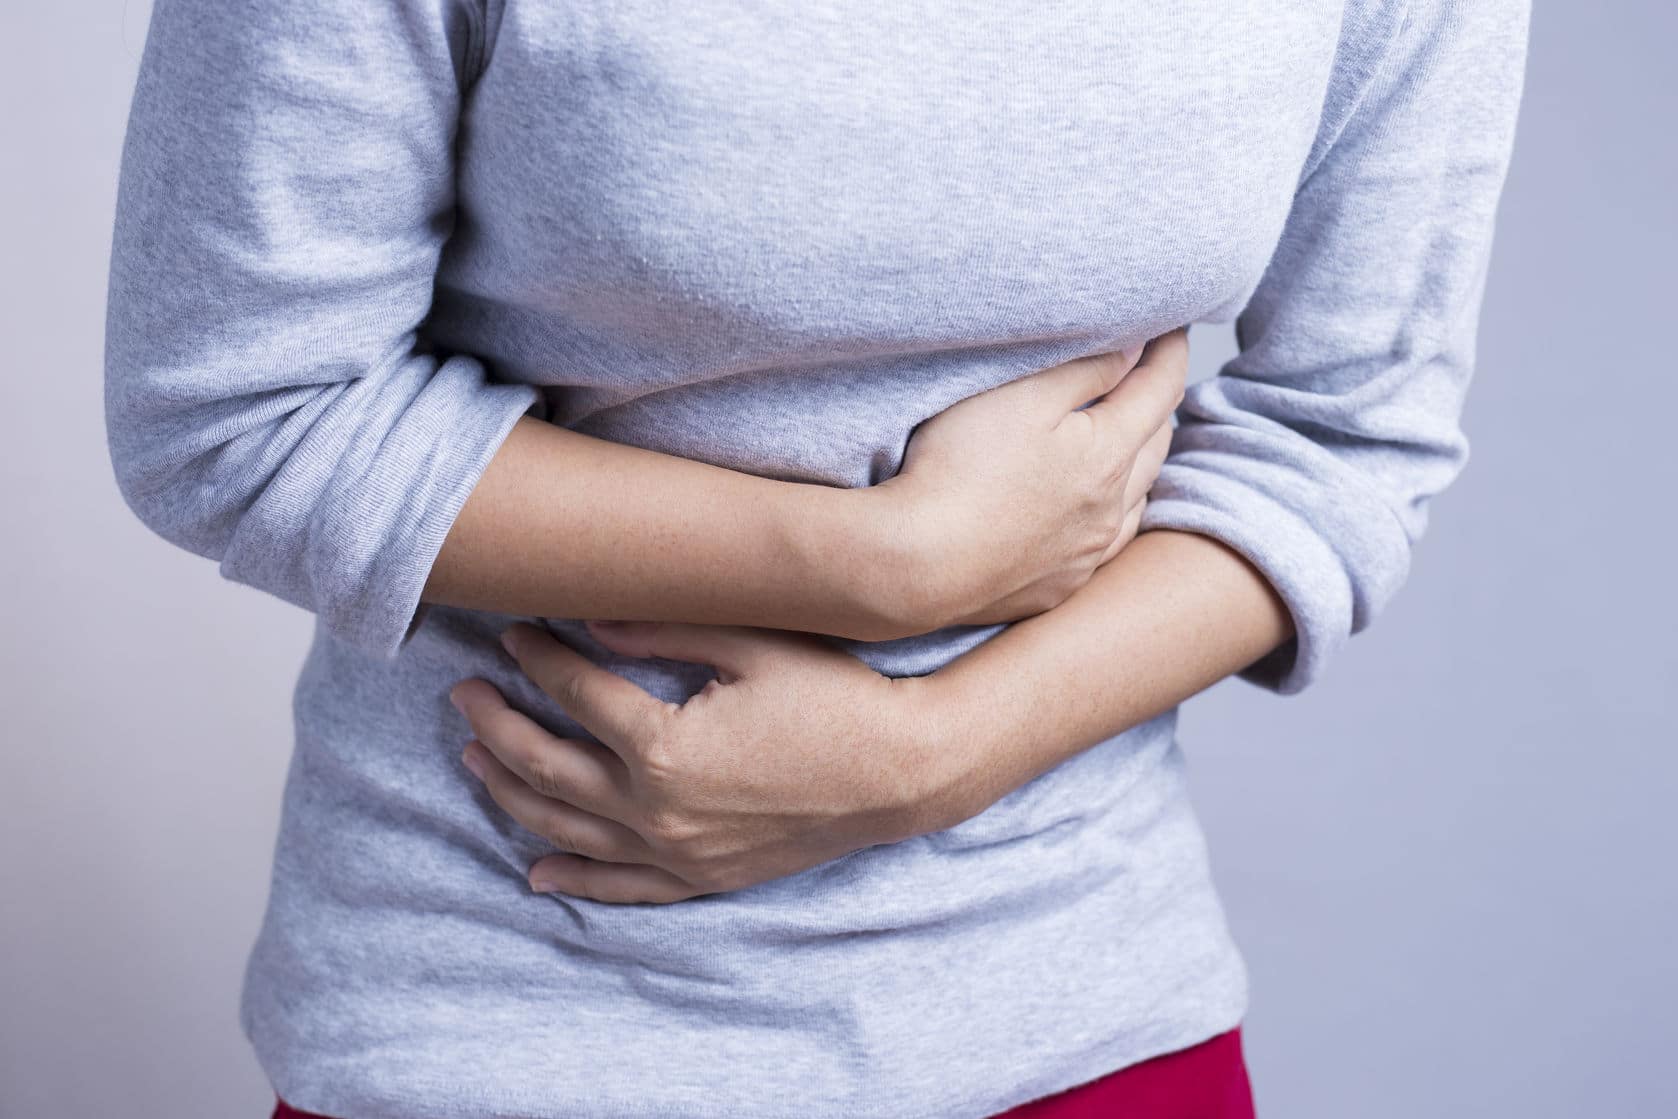 El dolor en el abdomen puede ser síntoma de varias enfermedades